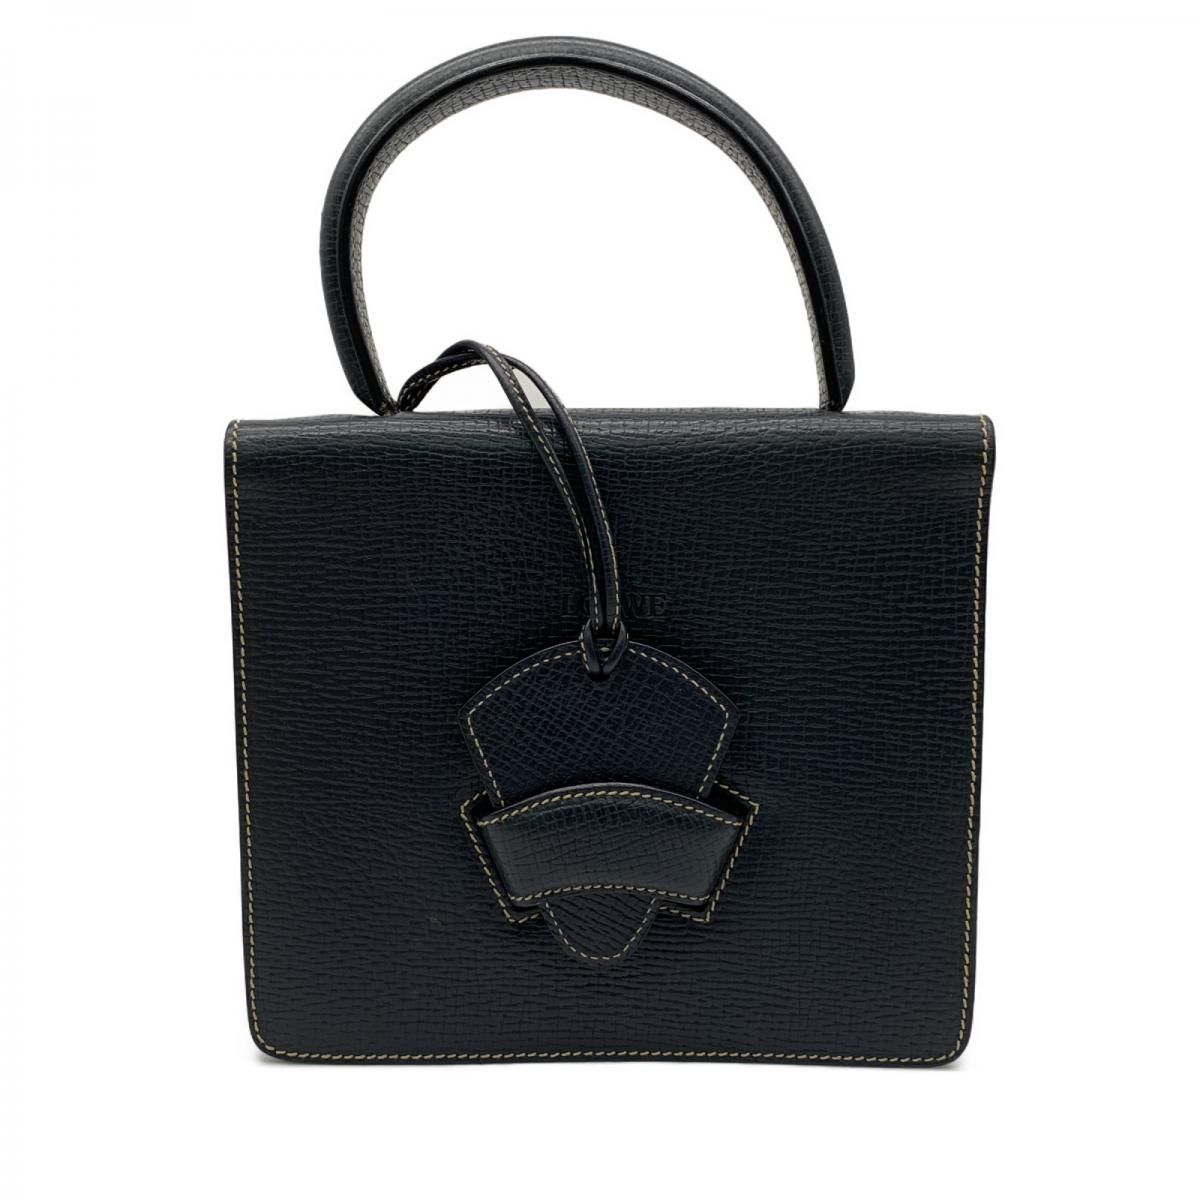 Leather Barcelona Handbag